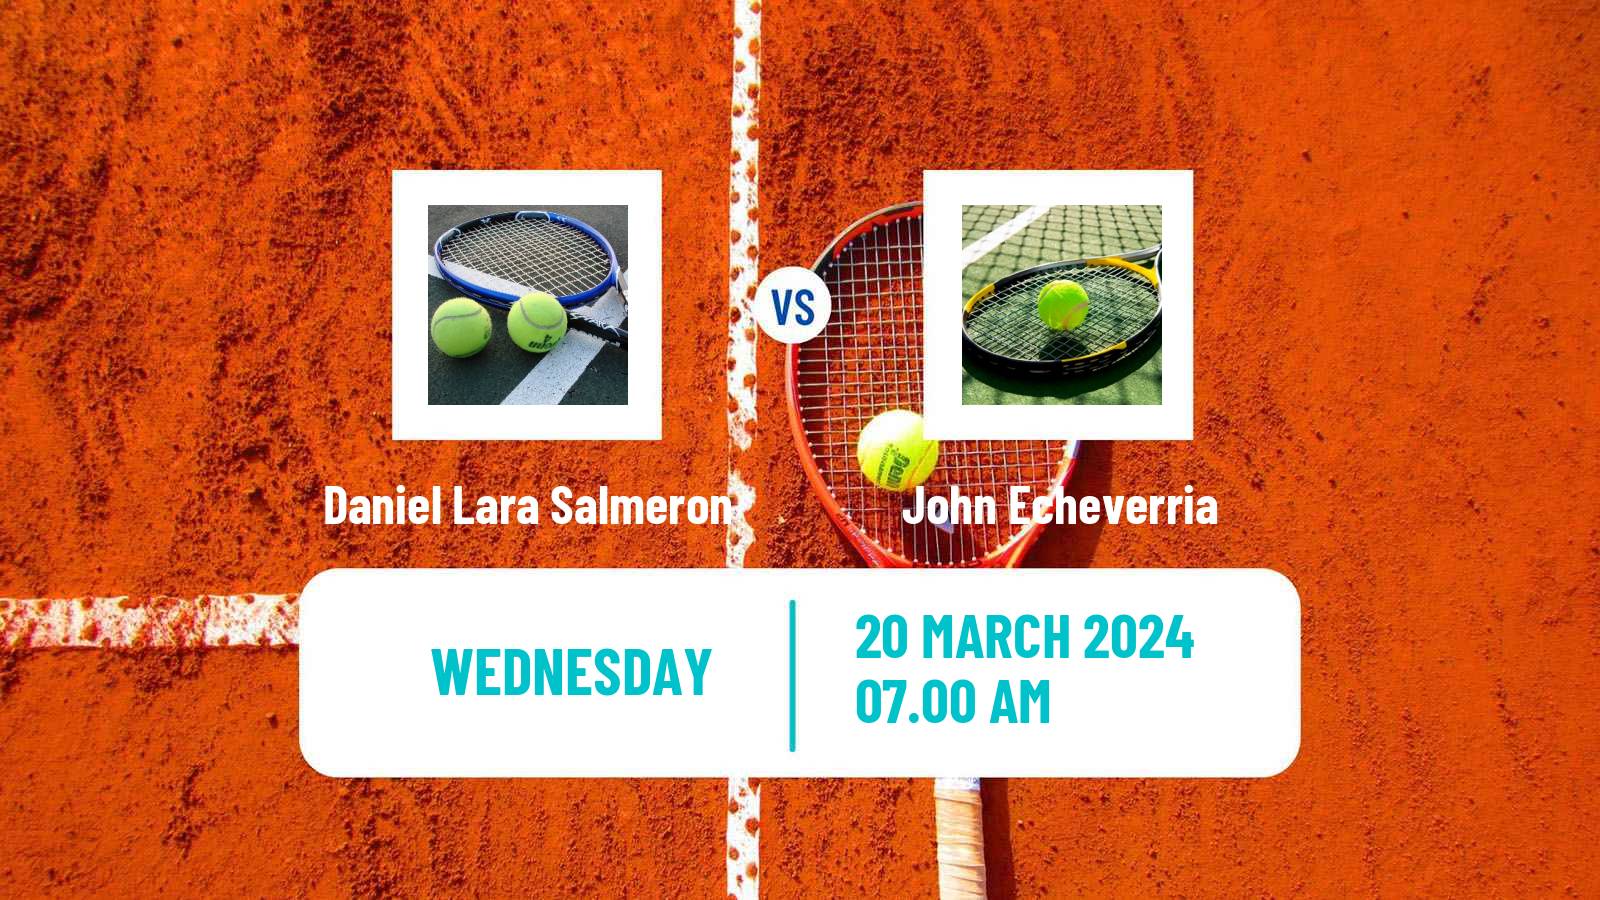 Tennis ITF M25 Loule Men Daniel Lara Salmeron - John Echeverria